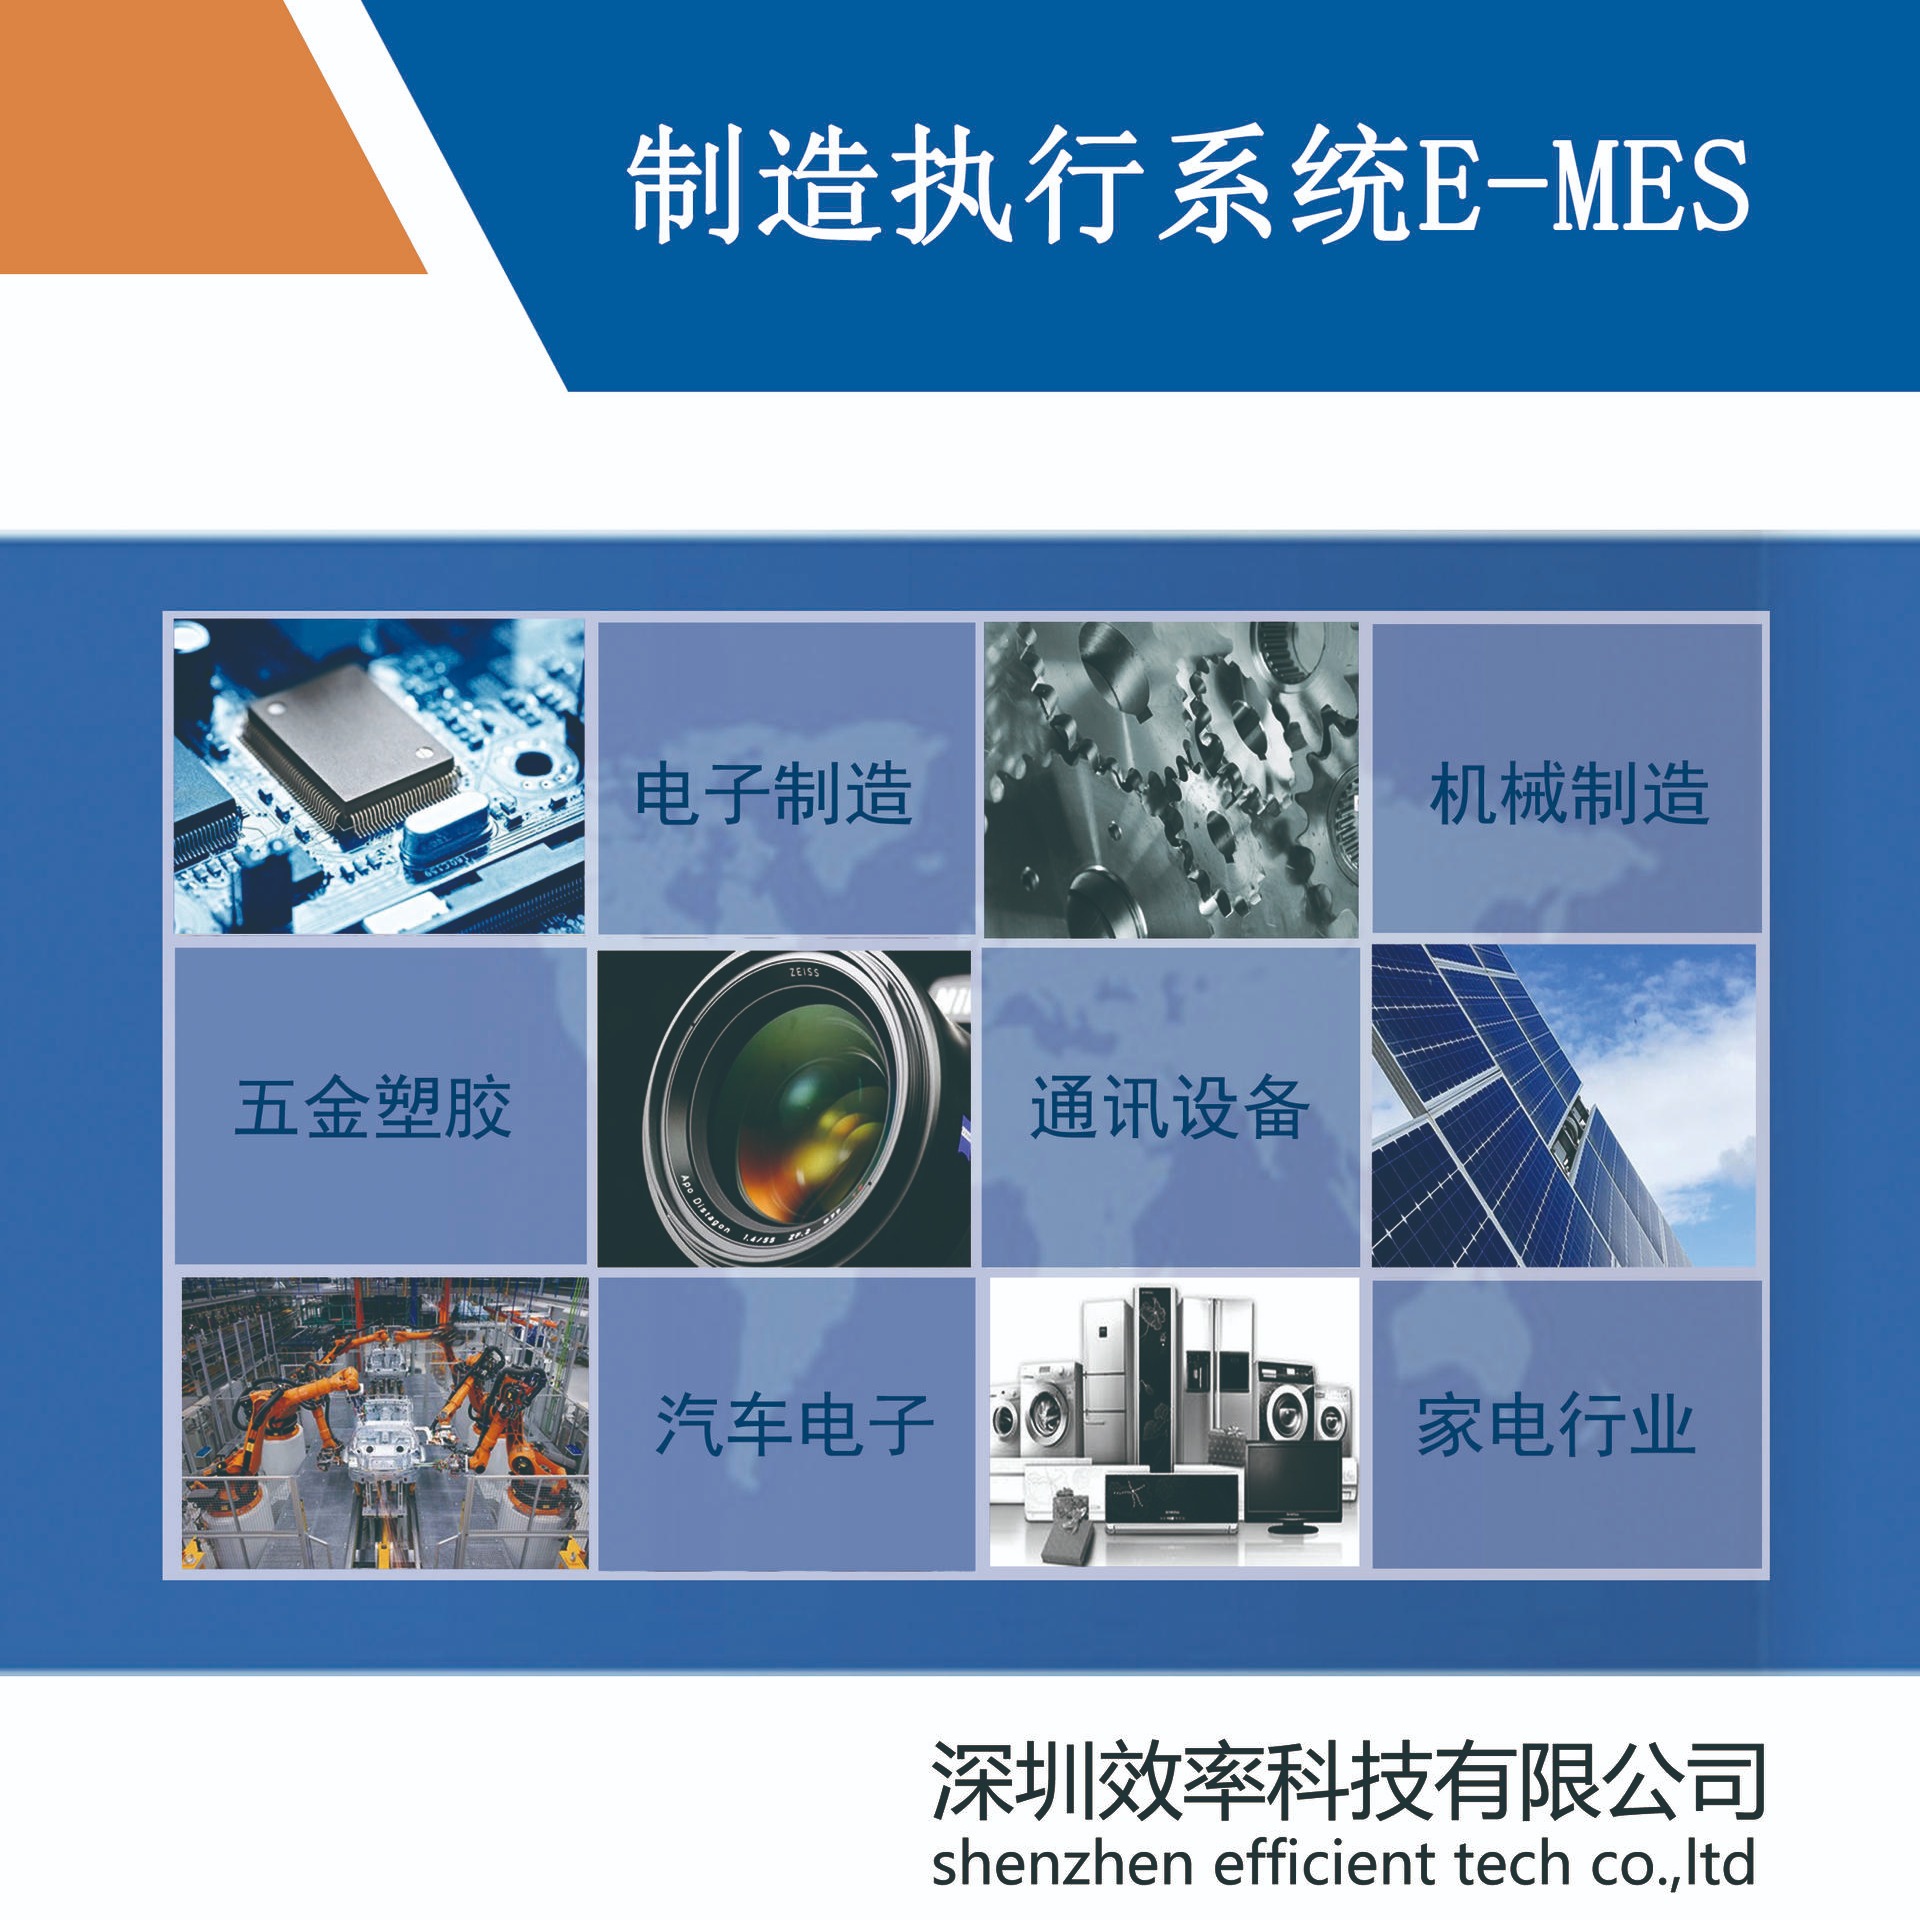 机械设备行业MES软件解决方案 效率mes系统